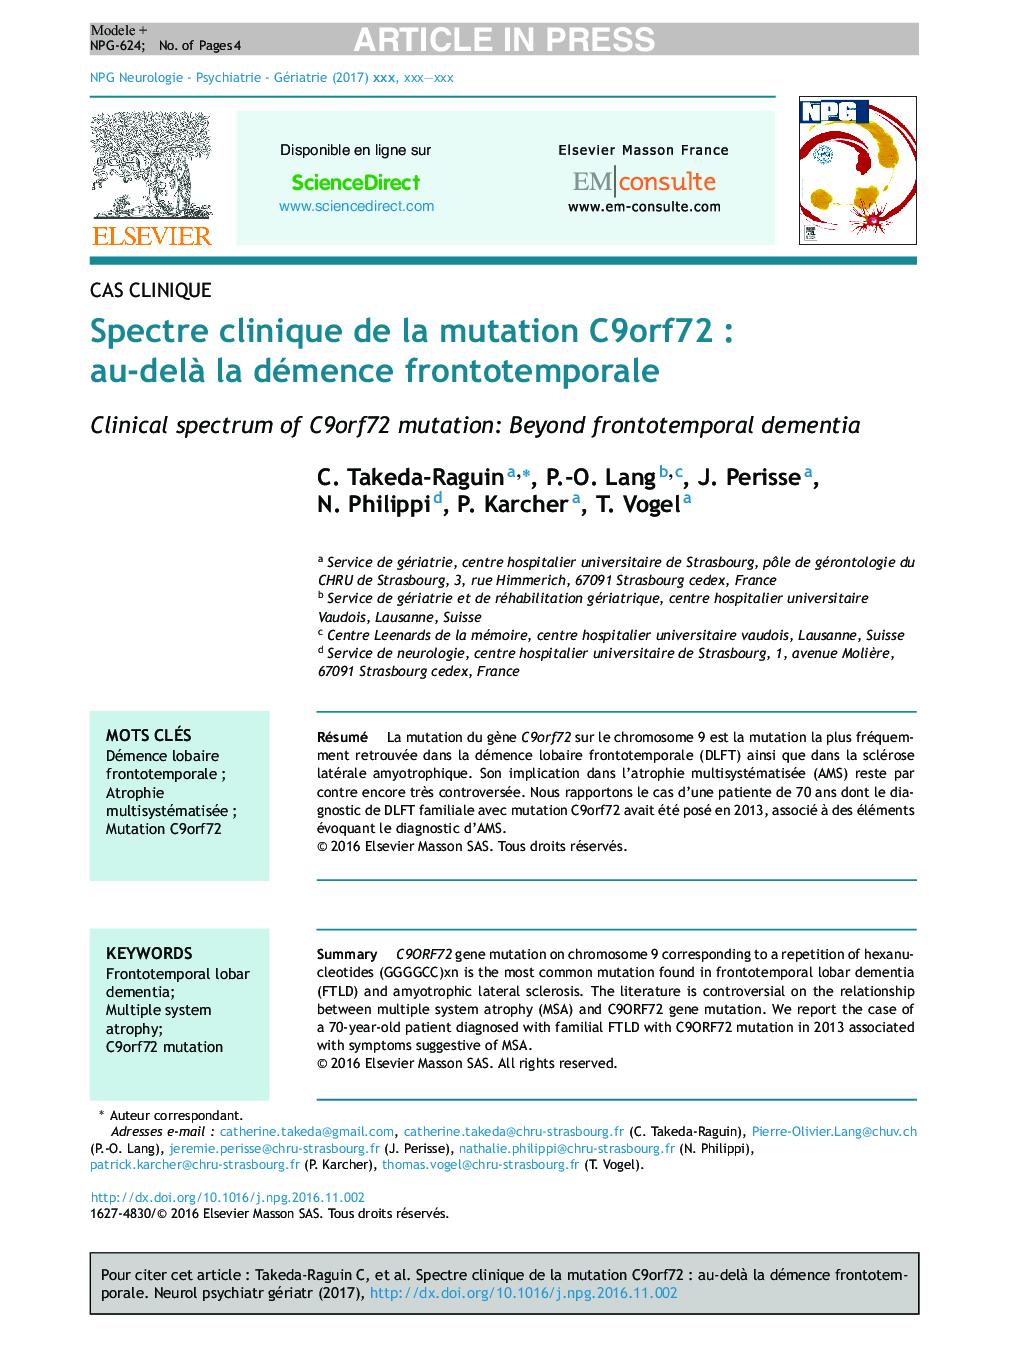 Spectre clinique de la mutation C9orf72Â : au-delÃ  la démence frontotemporale